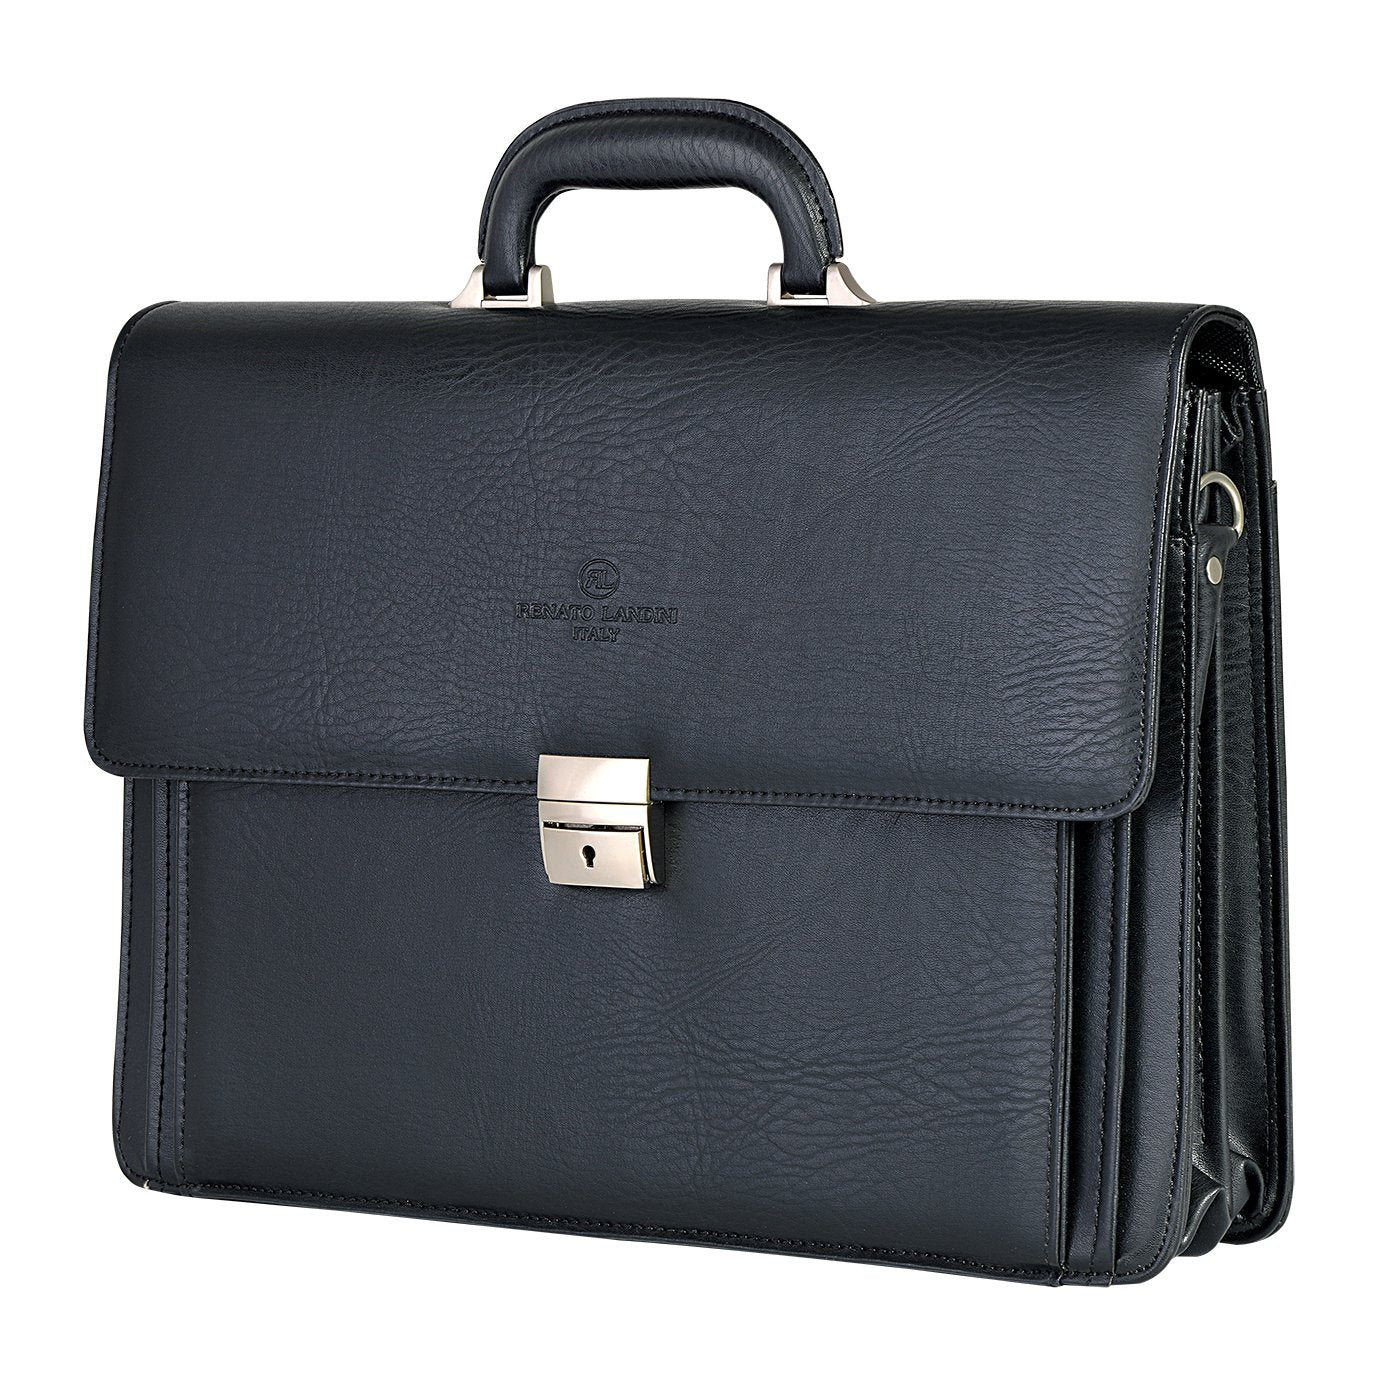 RENATO LANDINI Gift Set: Black Leather Bag + Pen + Men's Wallet + Key Holder